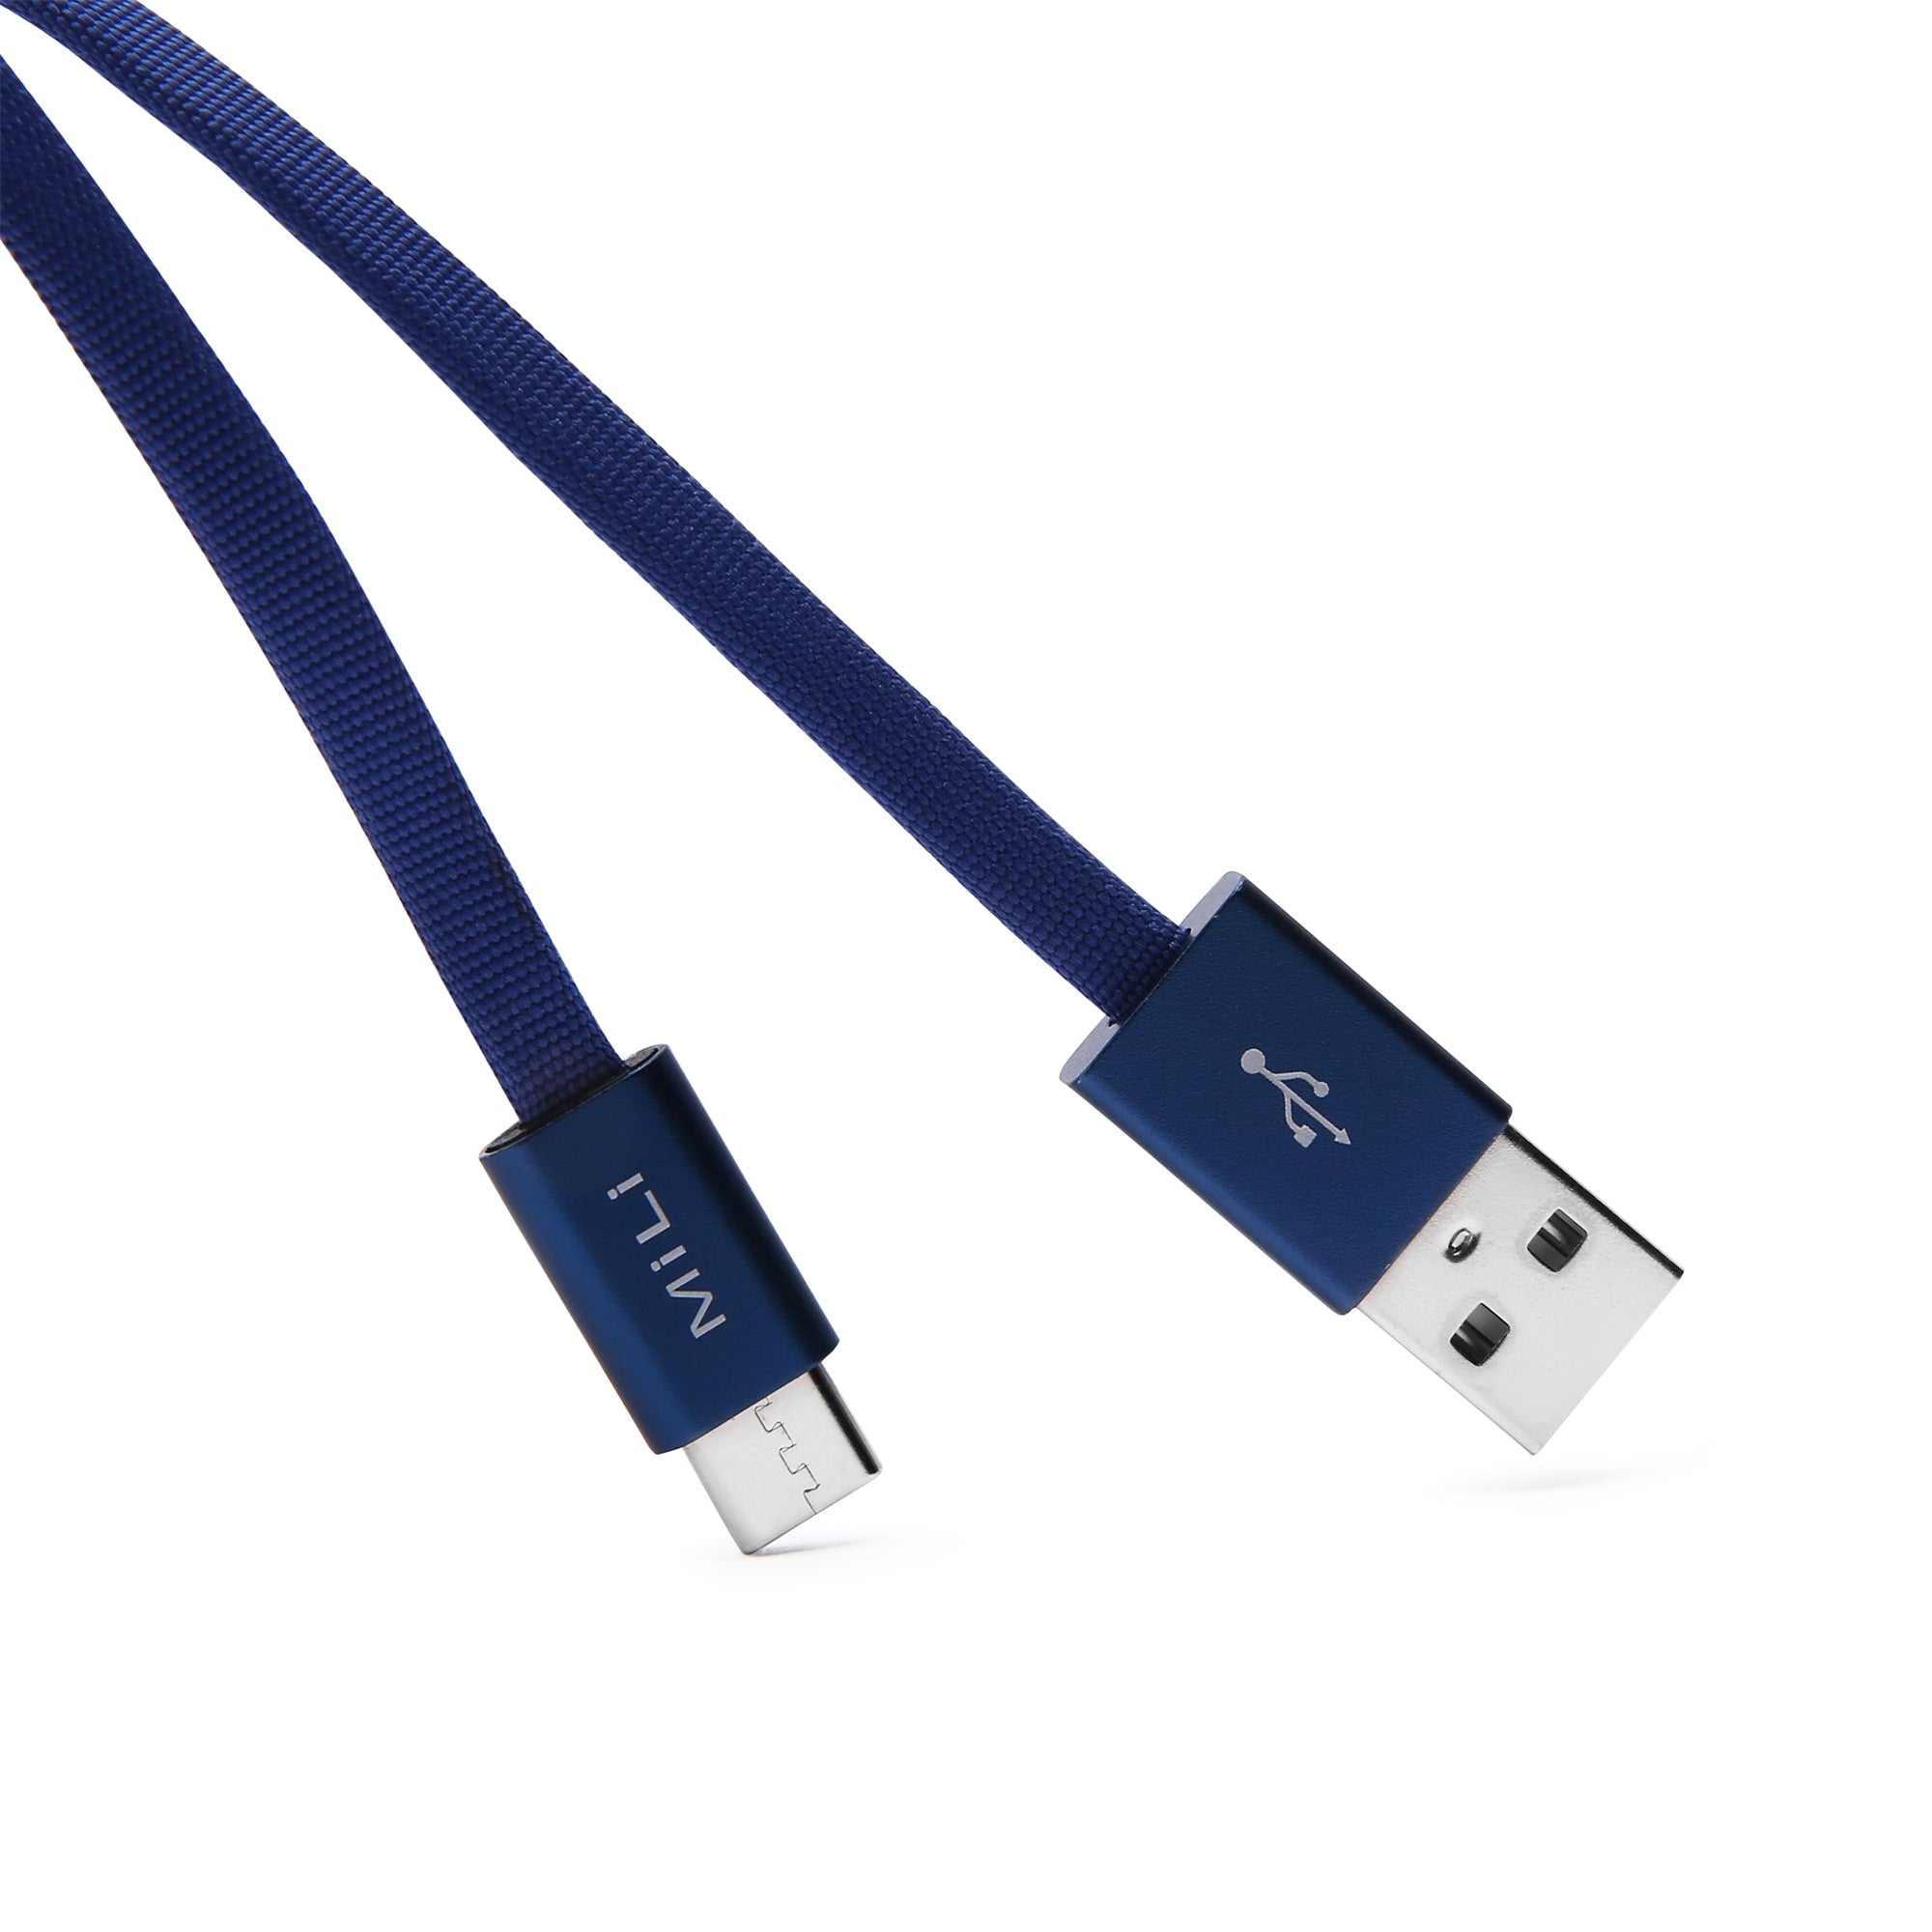 MiLi Stylish USB Type-C cable